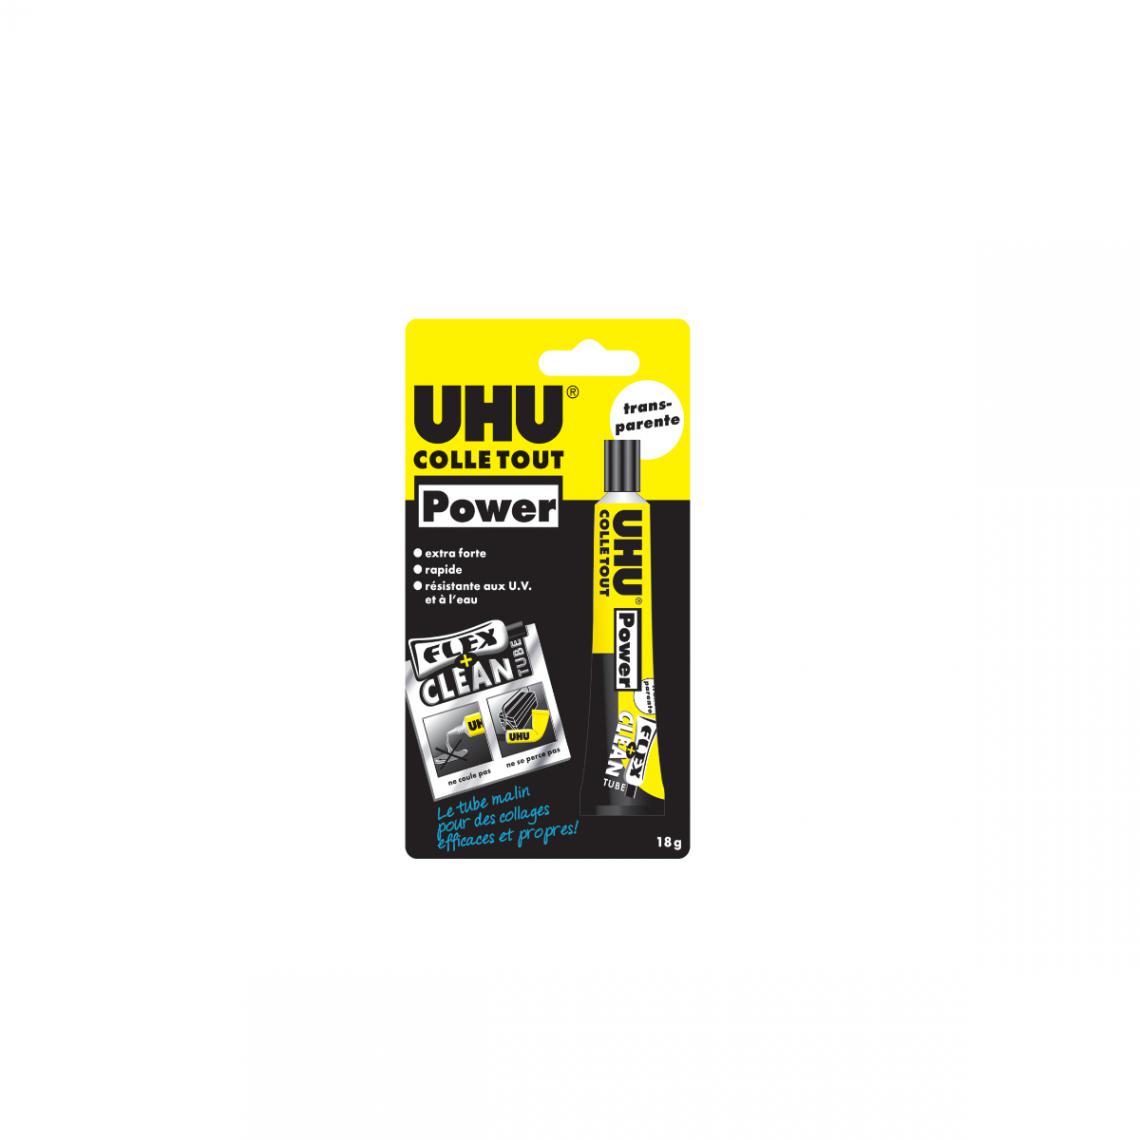 Uhu - Colle Tout multi-matériaux UHU Power Flex + Clean - 18g - 48495 - Colle & adhésif